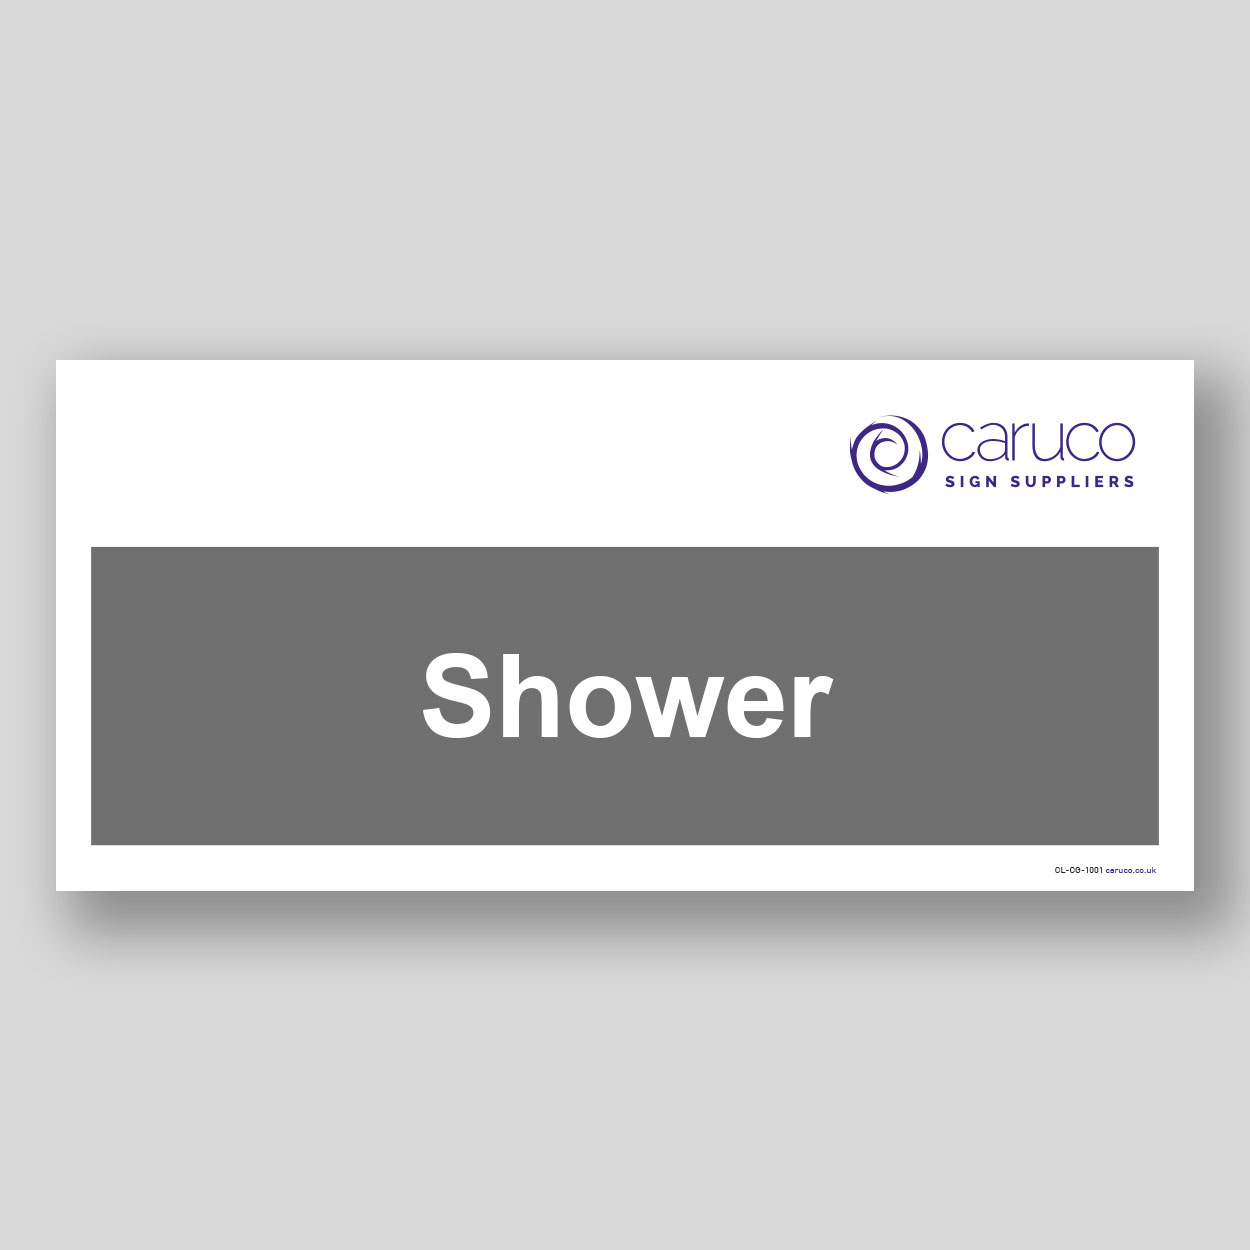 CL-CG-1001 Shower